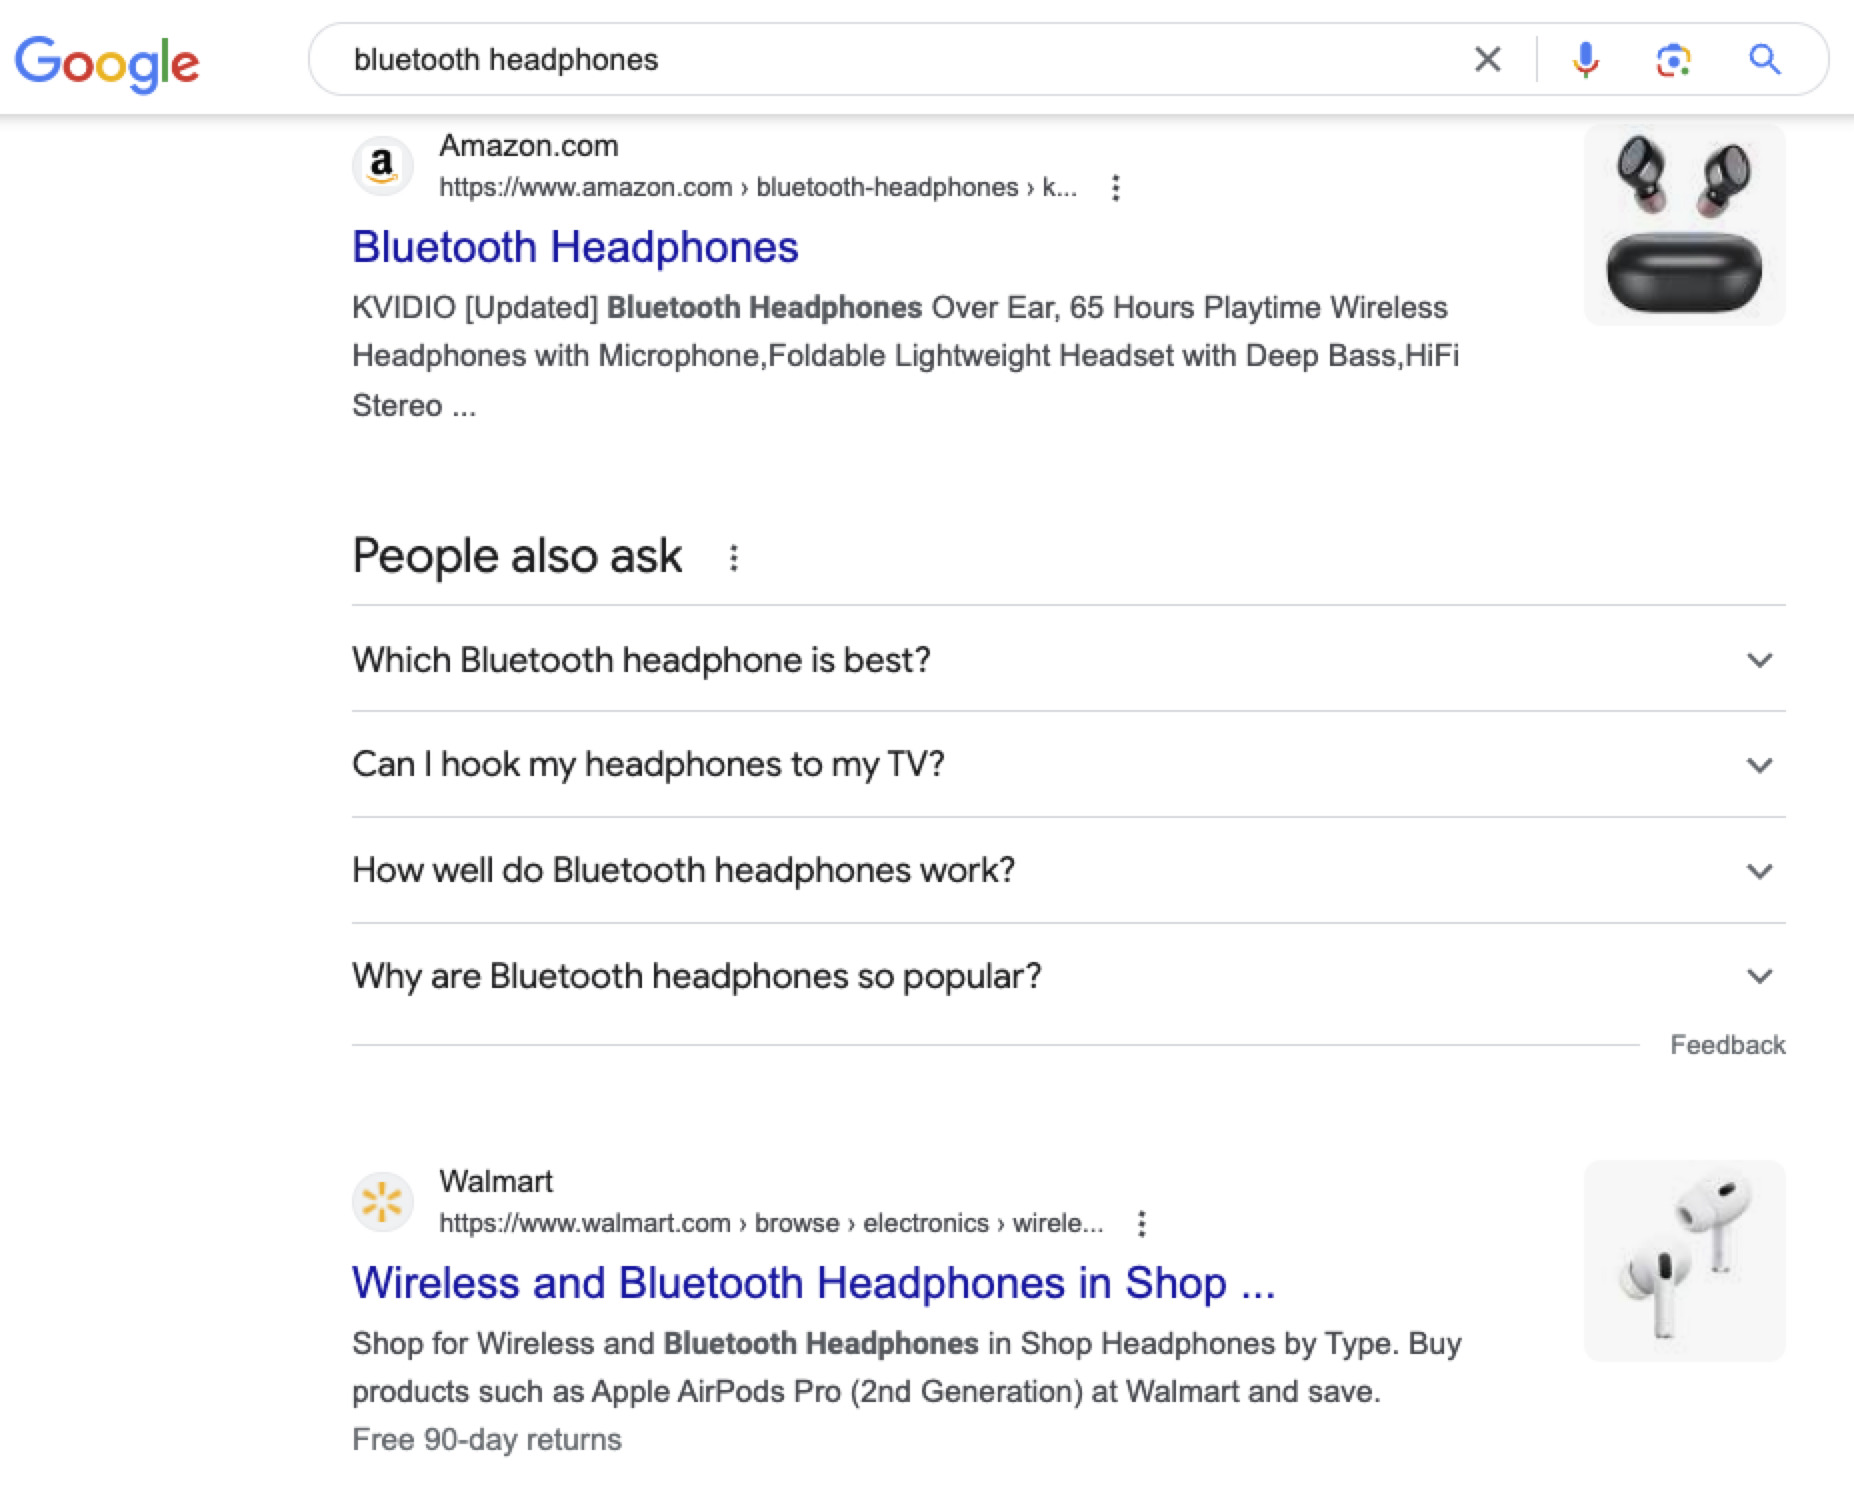 通过 google.com 搜索 "bluetooth headphones" 的结果